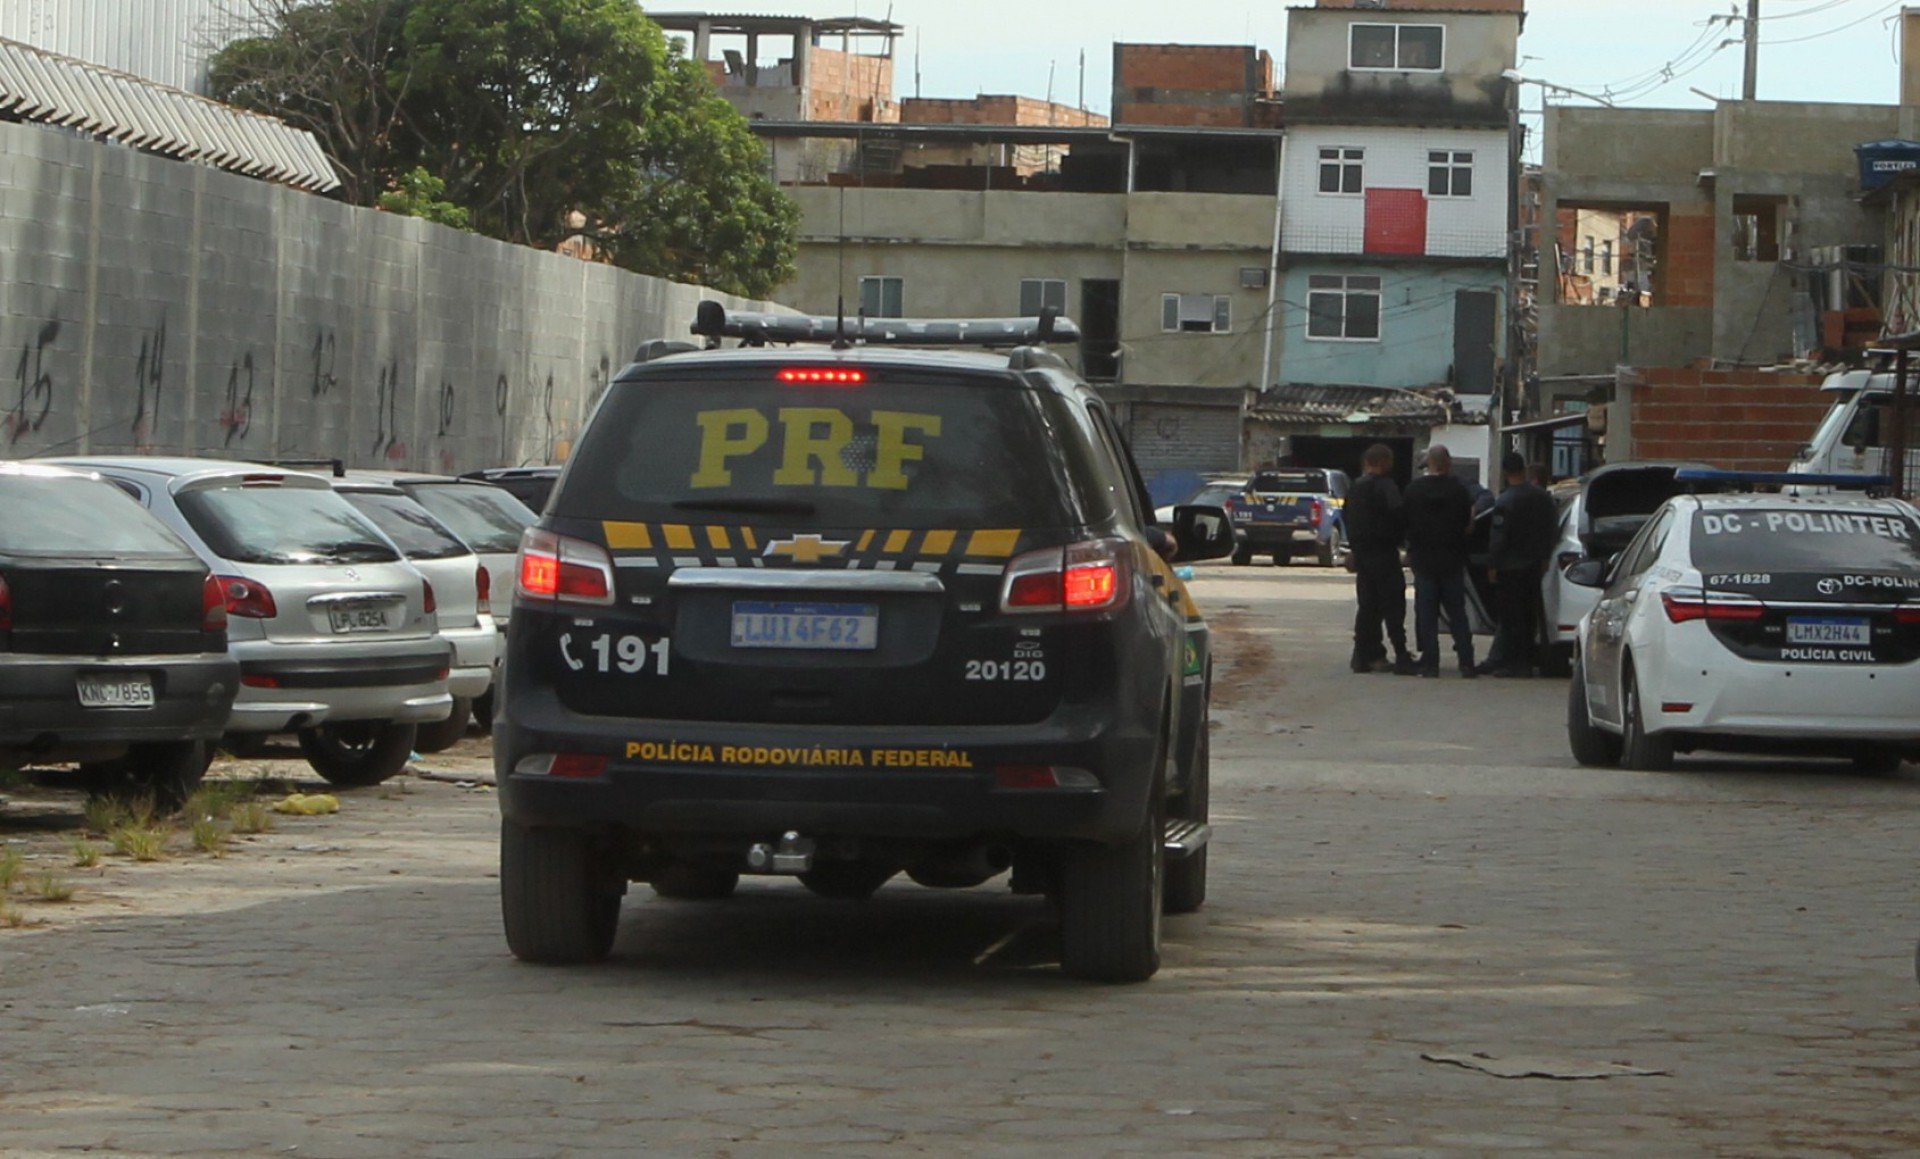 Operação da Polícia Civil com a Polícia Rodoviária Federal na Favela Kelson's, na Penha, Zona Norte do Rio, na manhã desta terça-feira   - Estefan Radovicz / Agencia O Dia